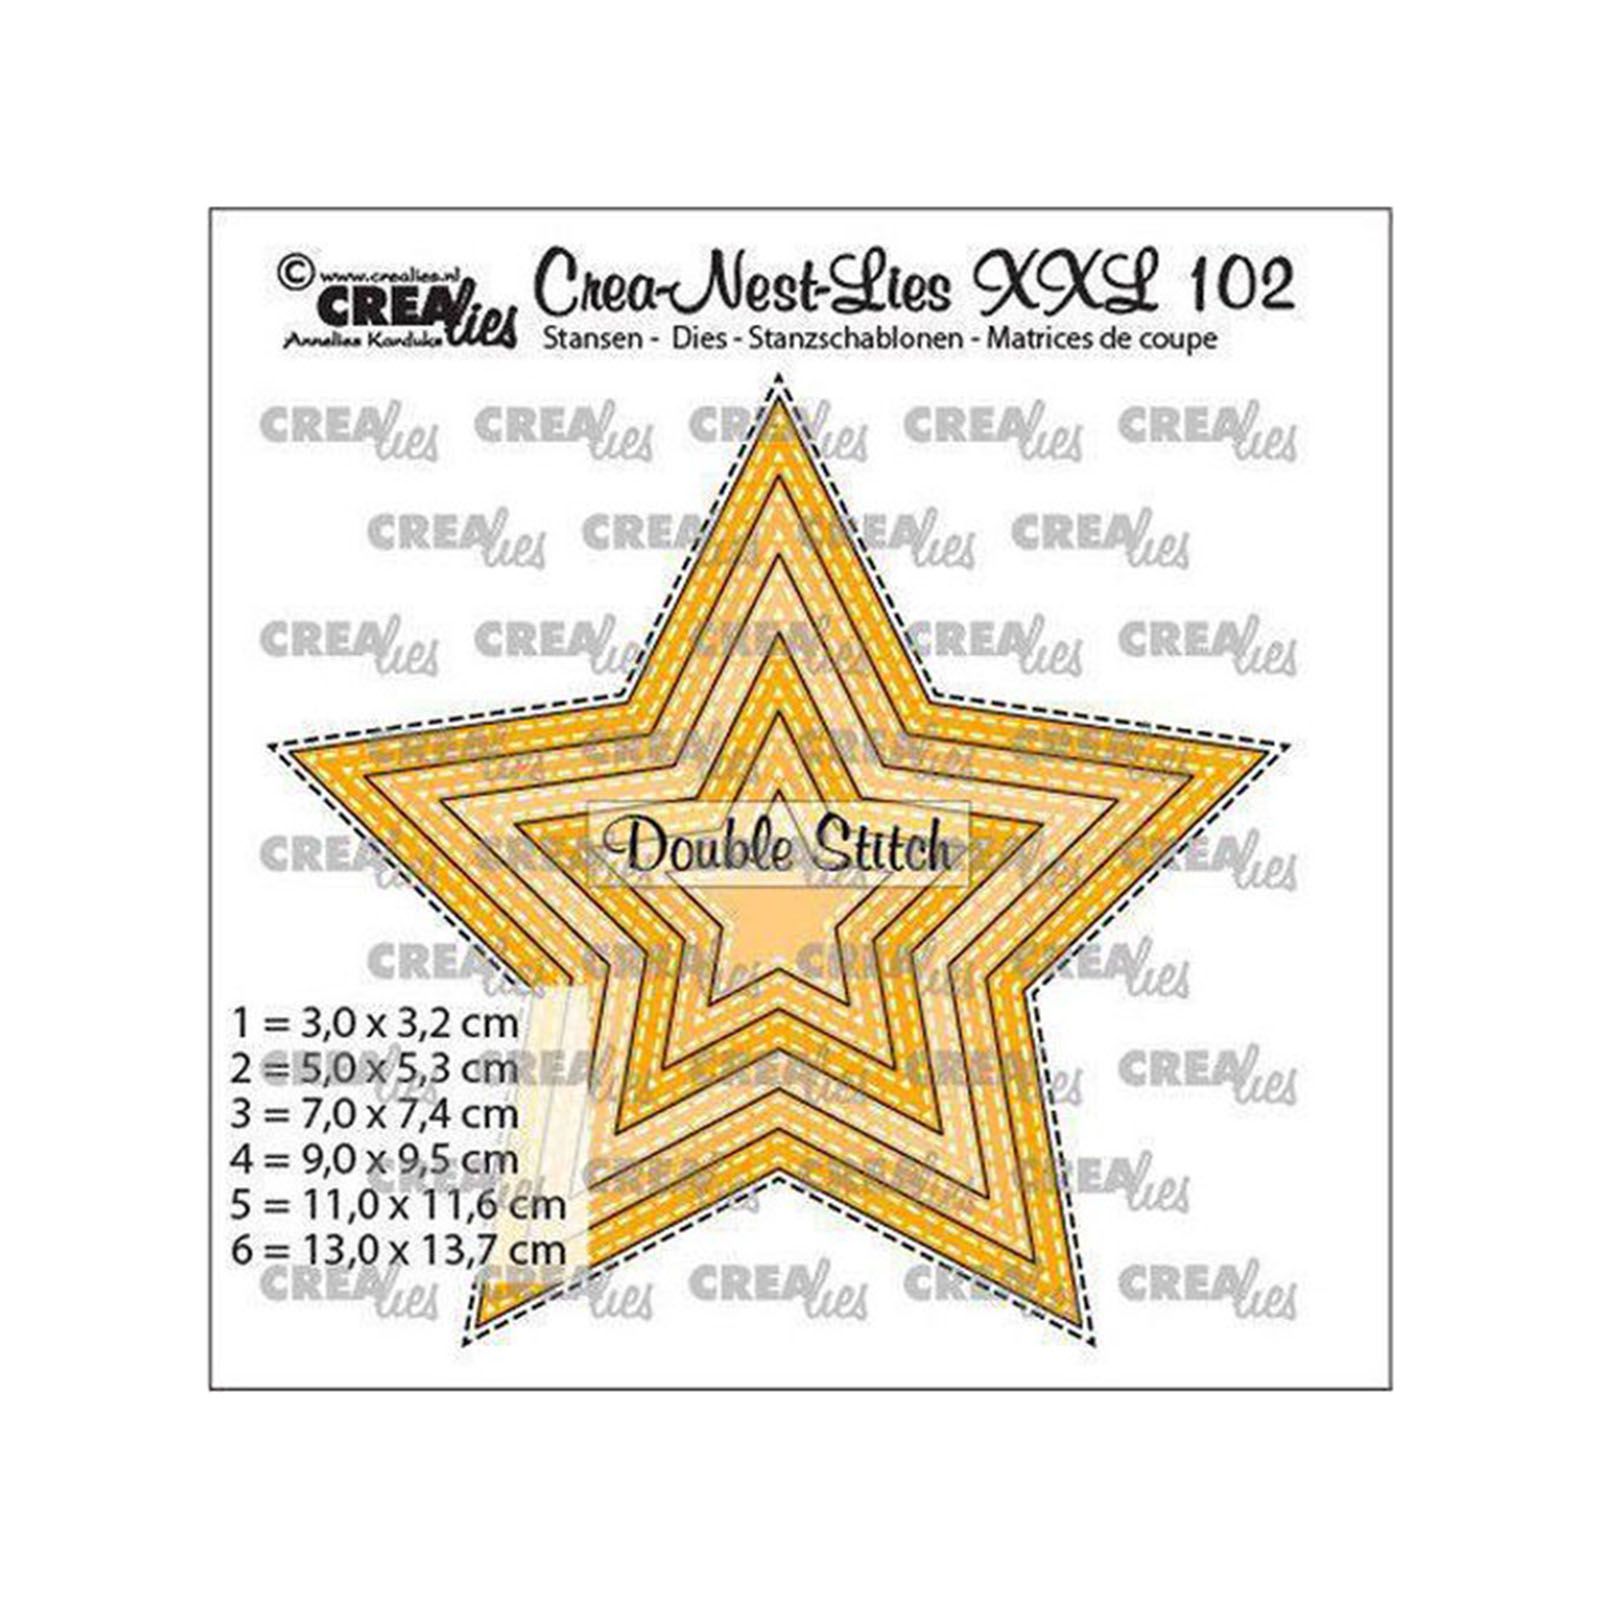 Crealies • Crea-Nest-Lies XXL étoiles avec double stitchline 